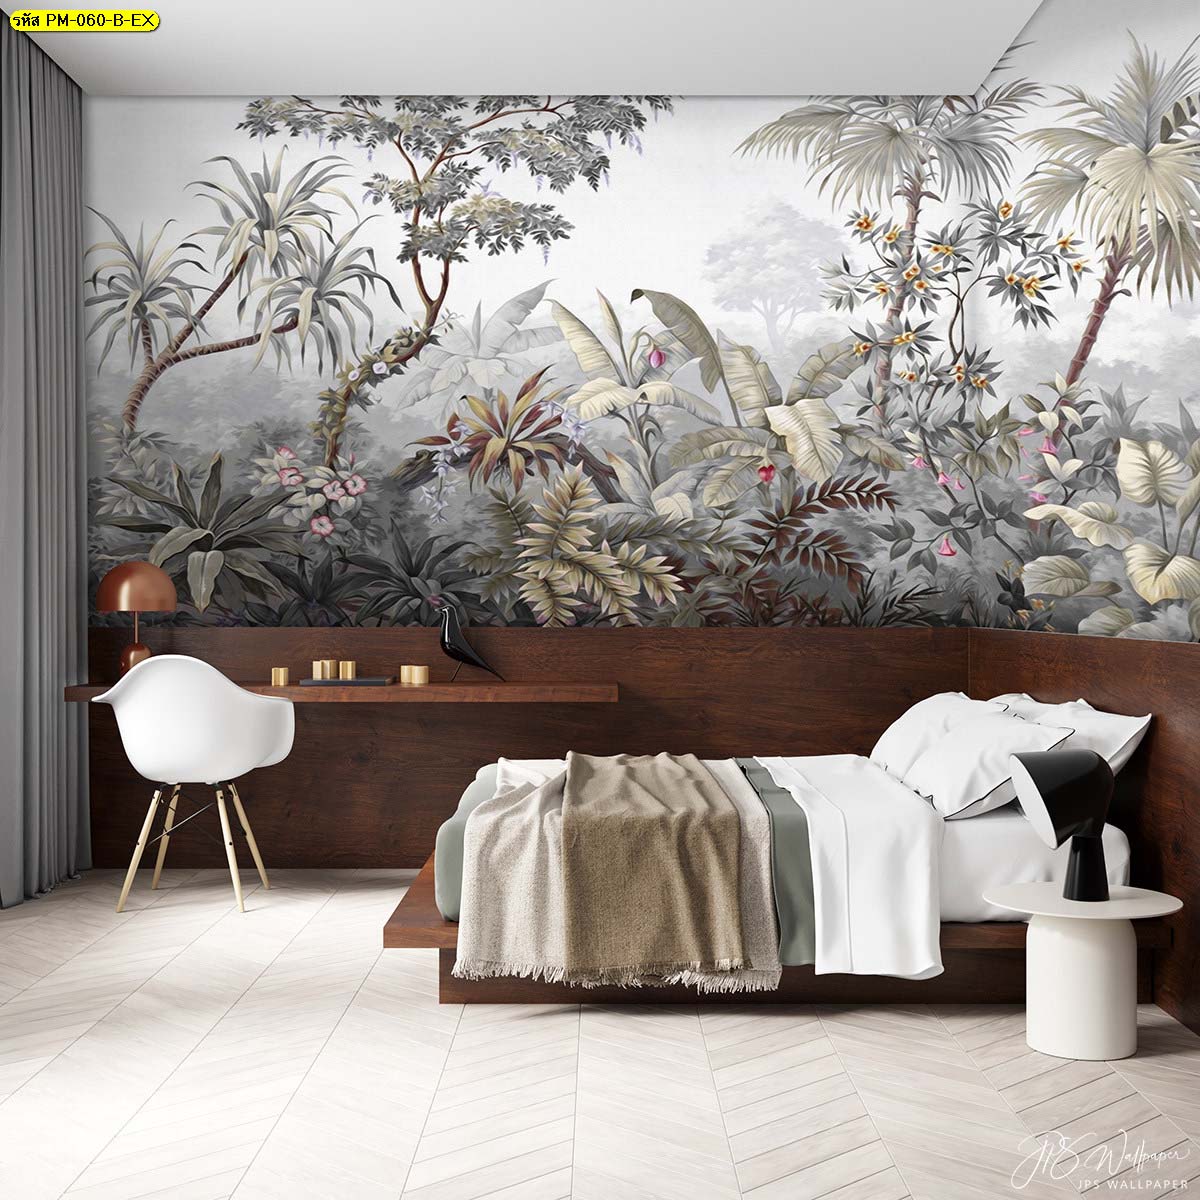 เตียงไม้สีเข้ม สร้างสัมผัสความอบอุ่นในห้องนอน วอลเปเปอร์สวนป่ายุโรป